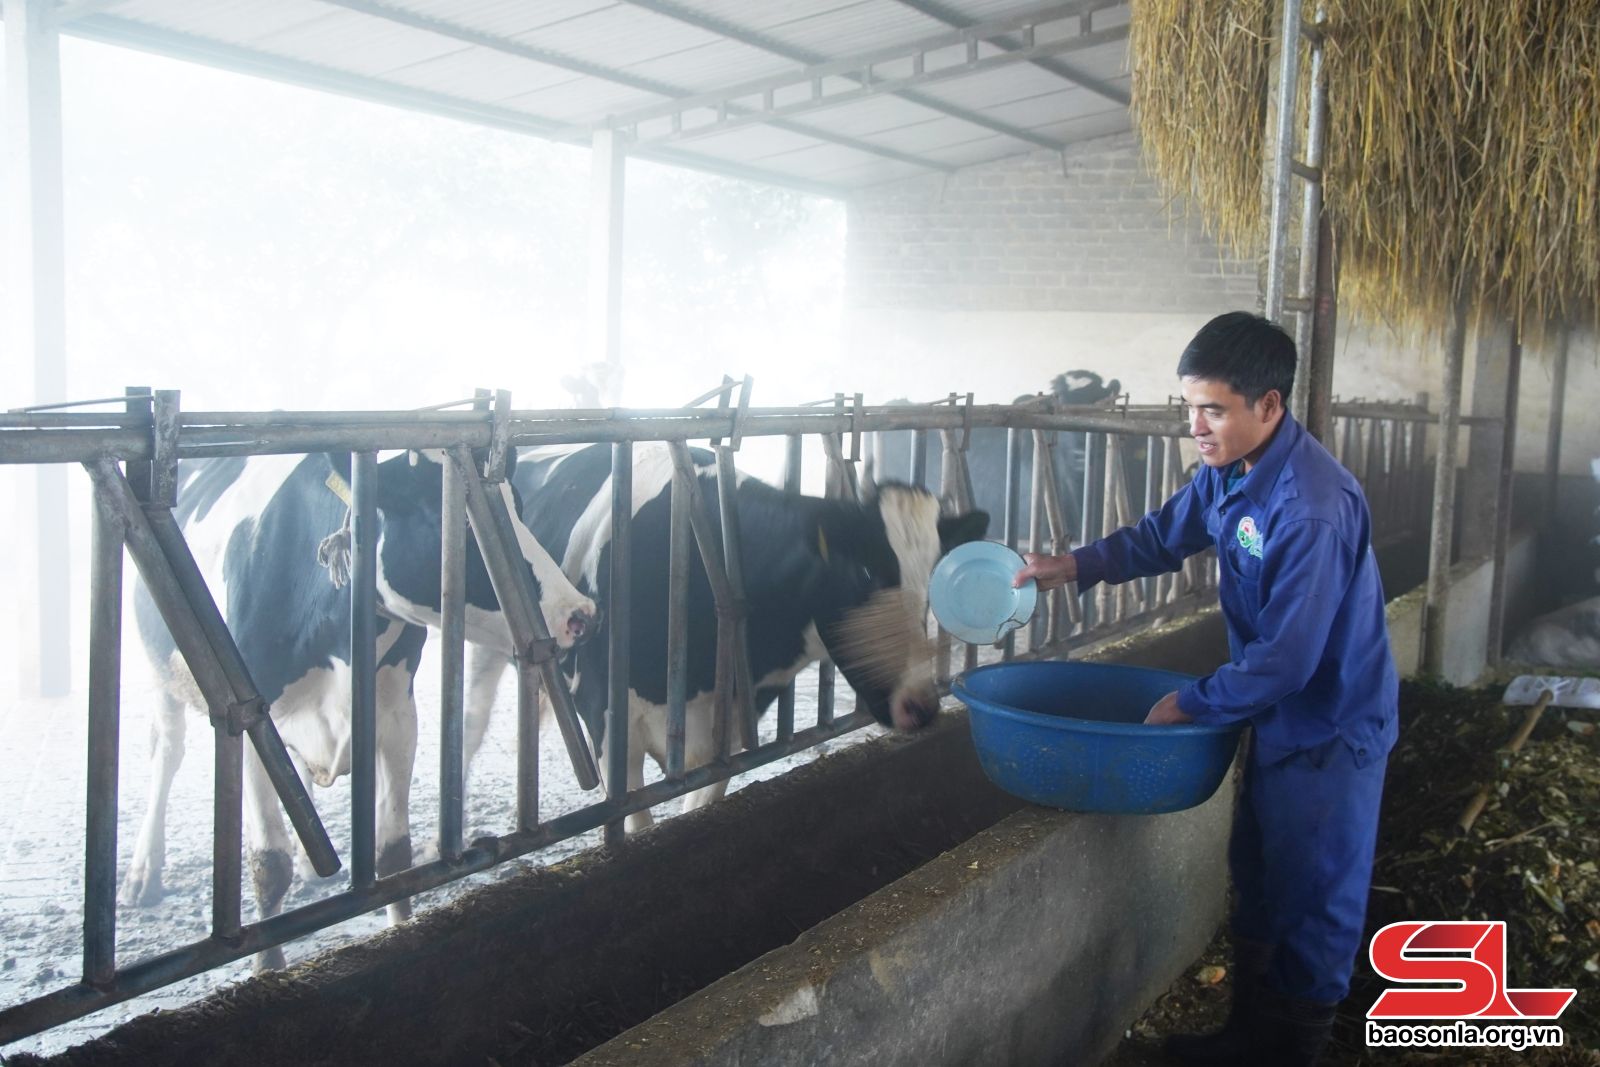 Chăn nuôi bò sữa tại Hà Nội Còn nhiều dư địa phát triển  Tạp chí Chăn nuôi  Việt Nam